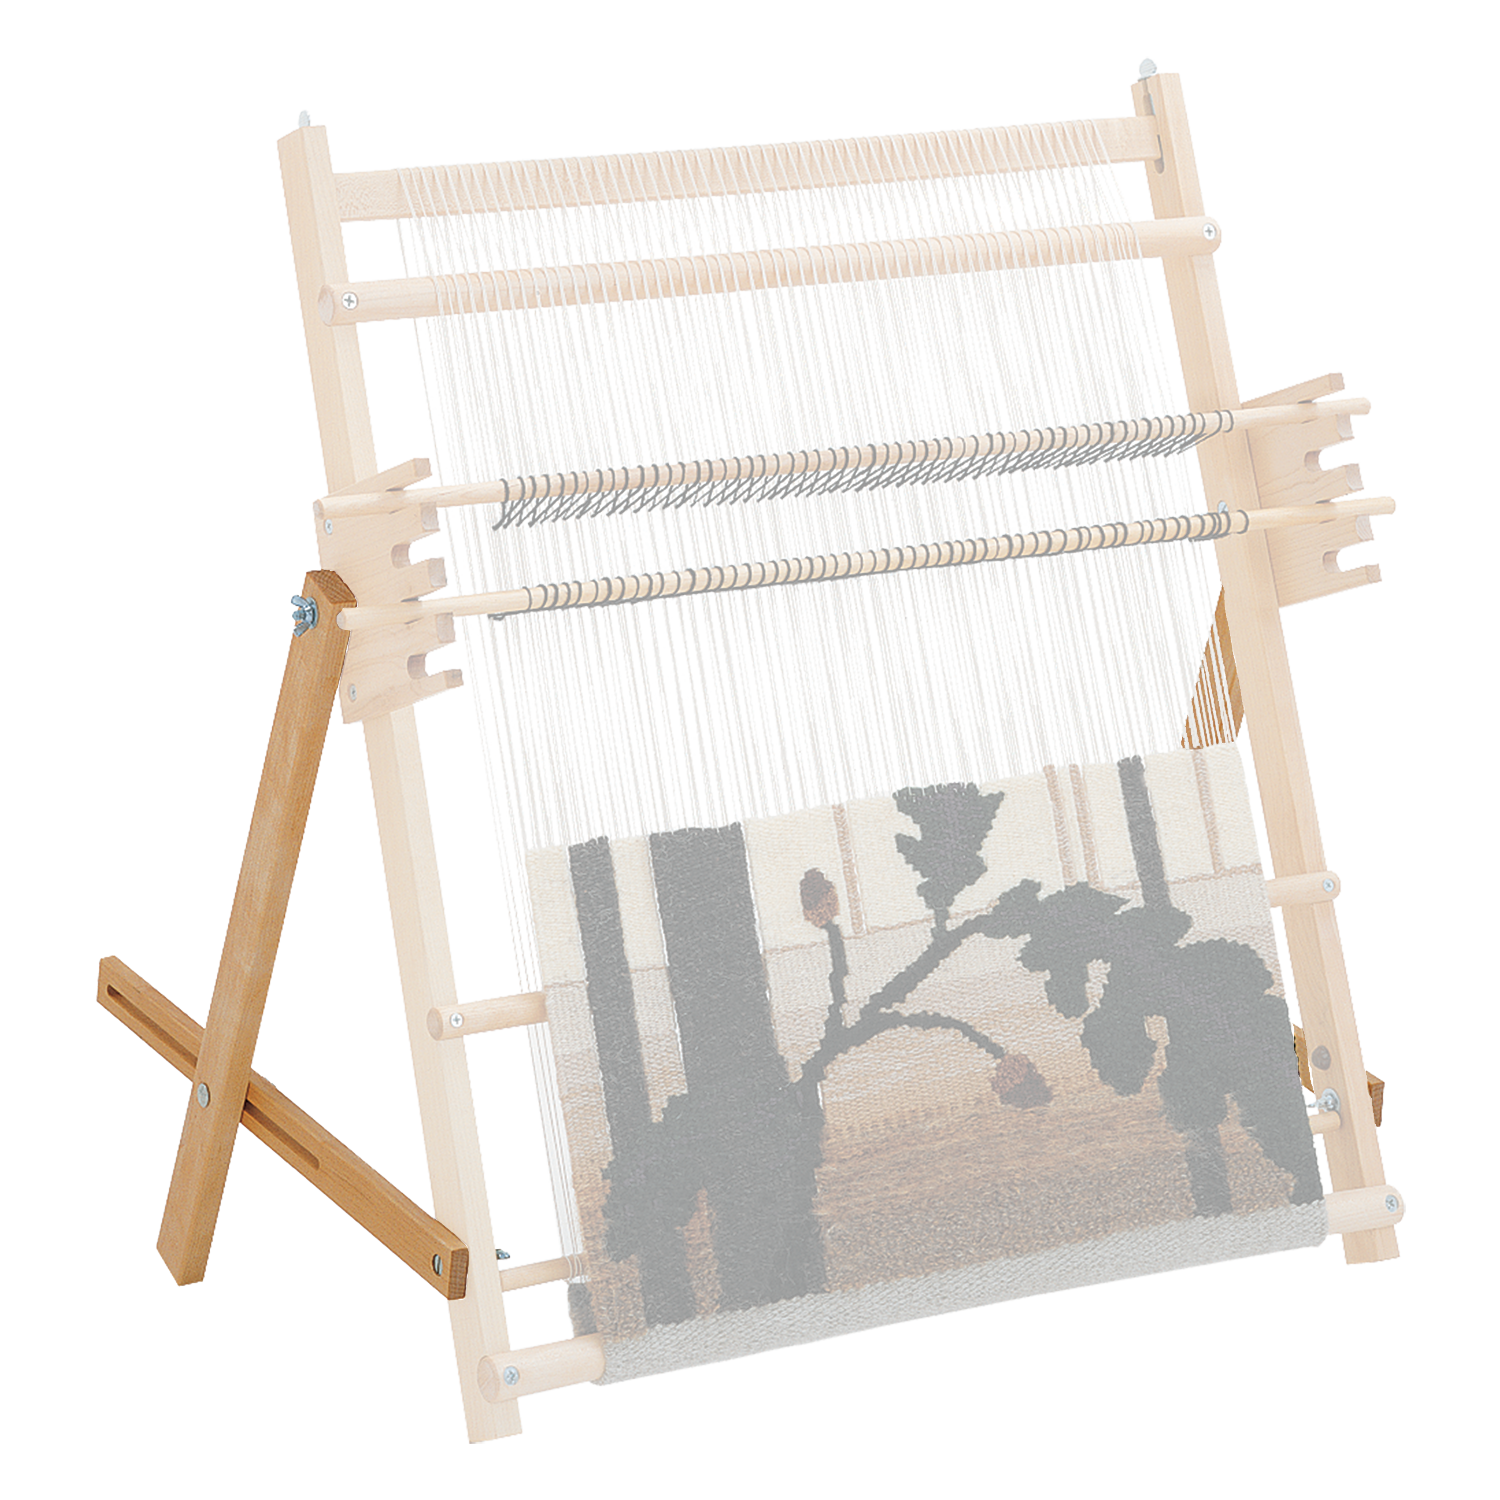 Schacht Lilli Loom, Portable Tapestry Loom, Beginner Loom, Kids